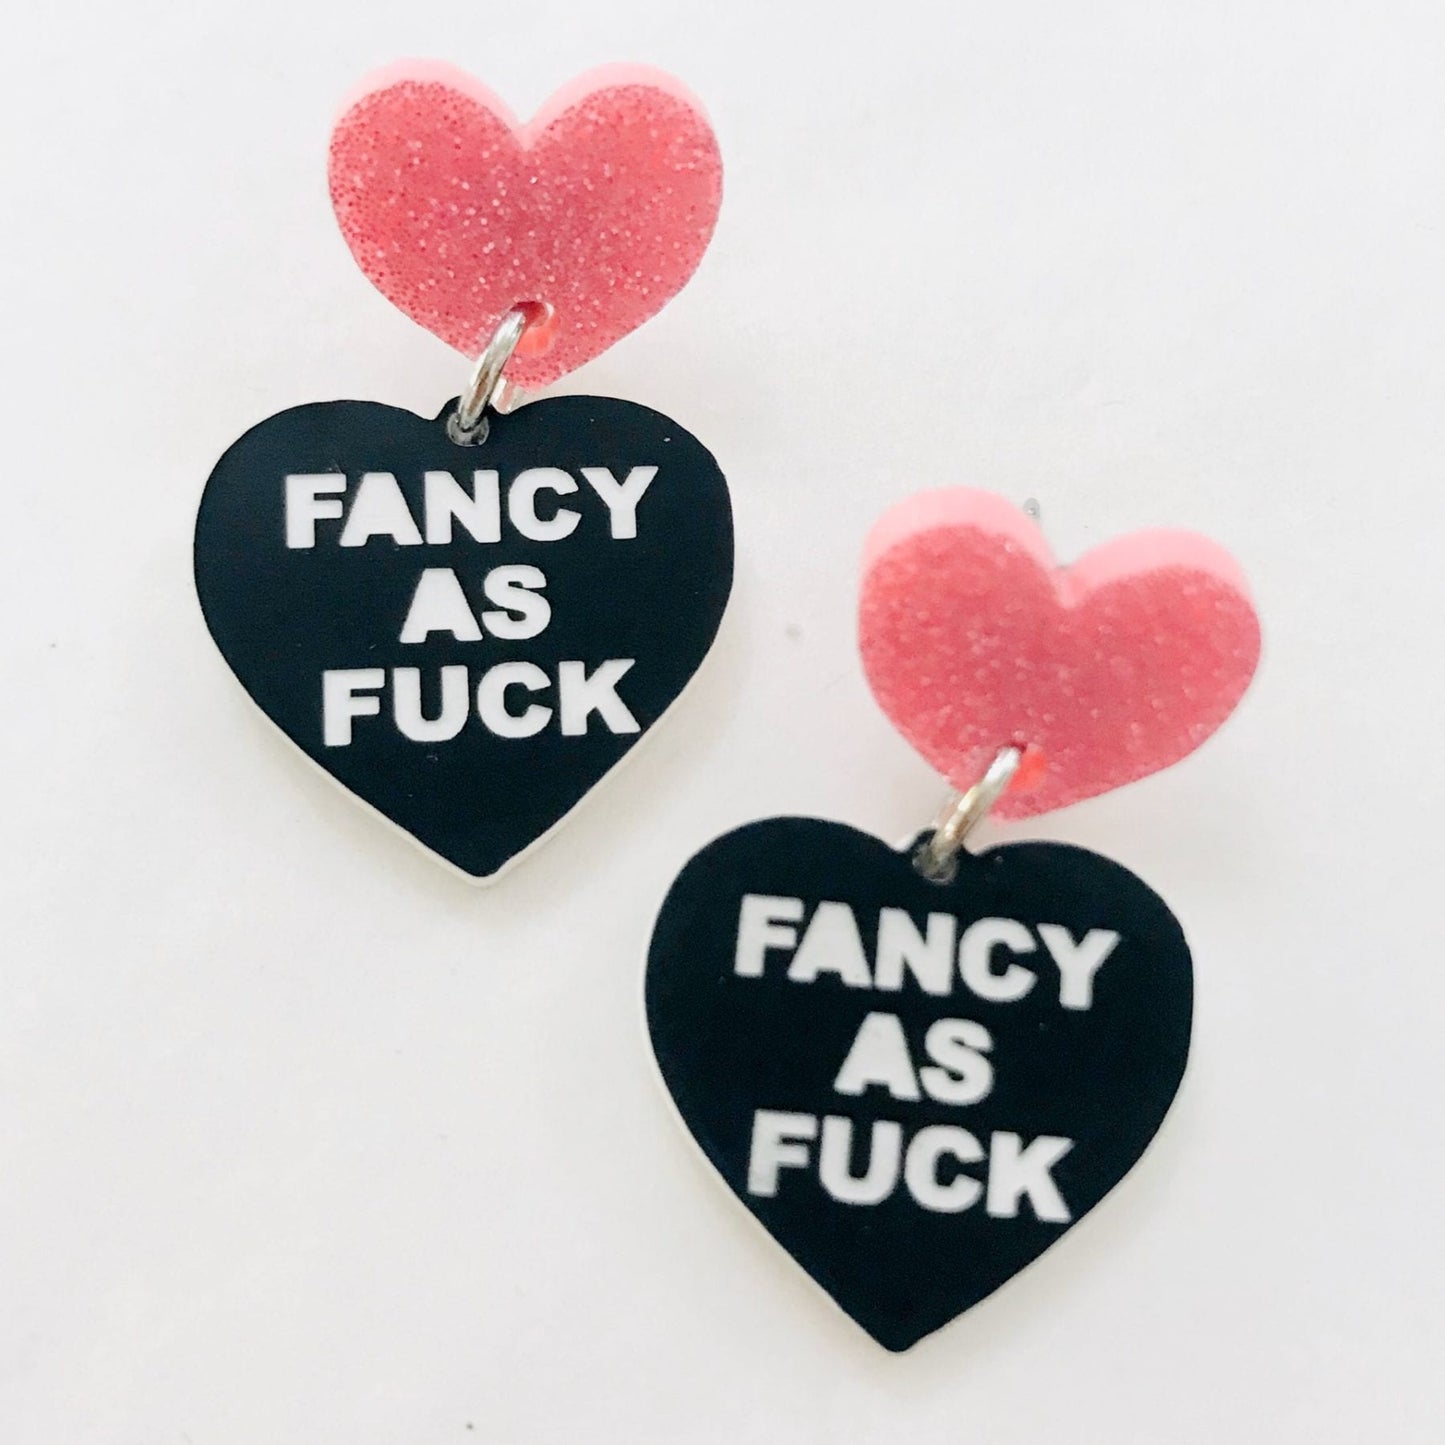 Haus of Dizzy Mini Heart Earrings Fancy as Fuck Studs in Pink Glitter